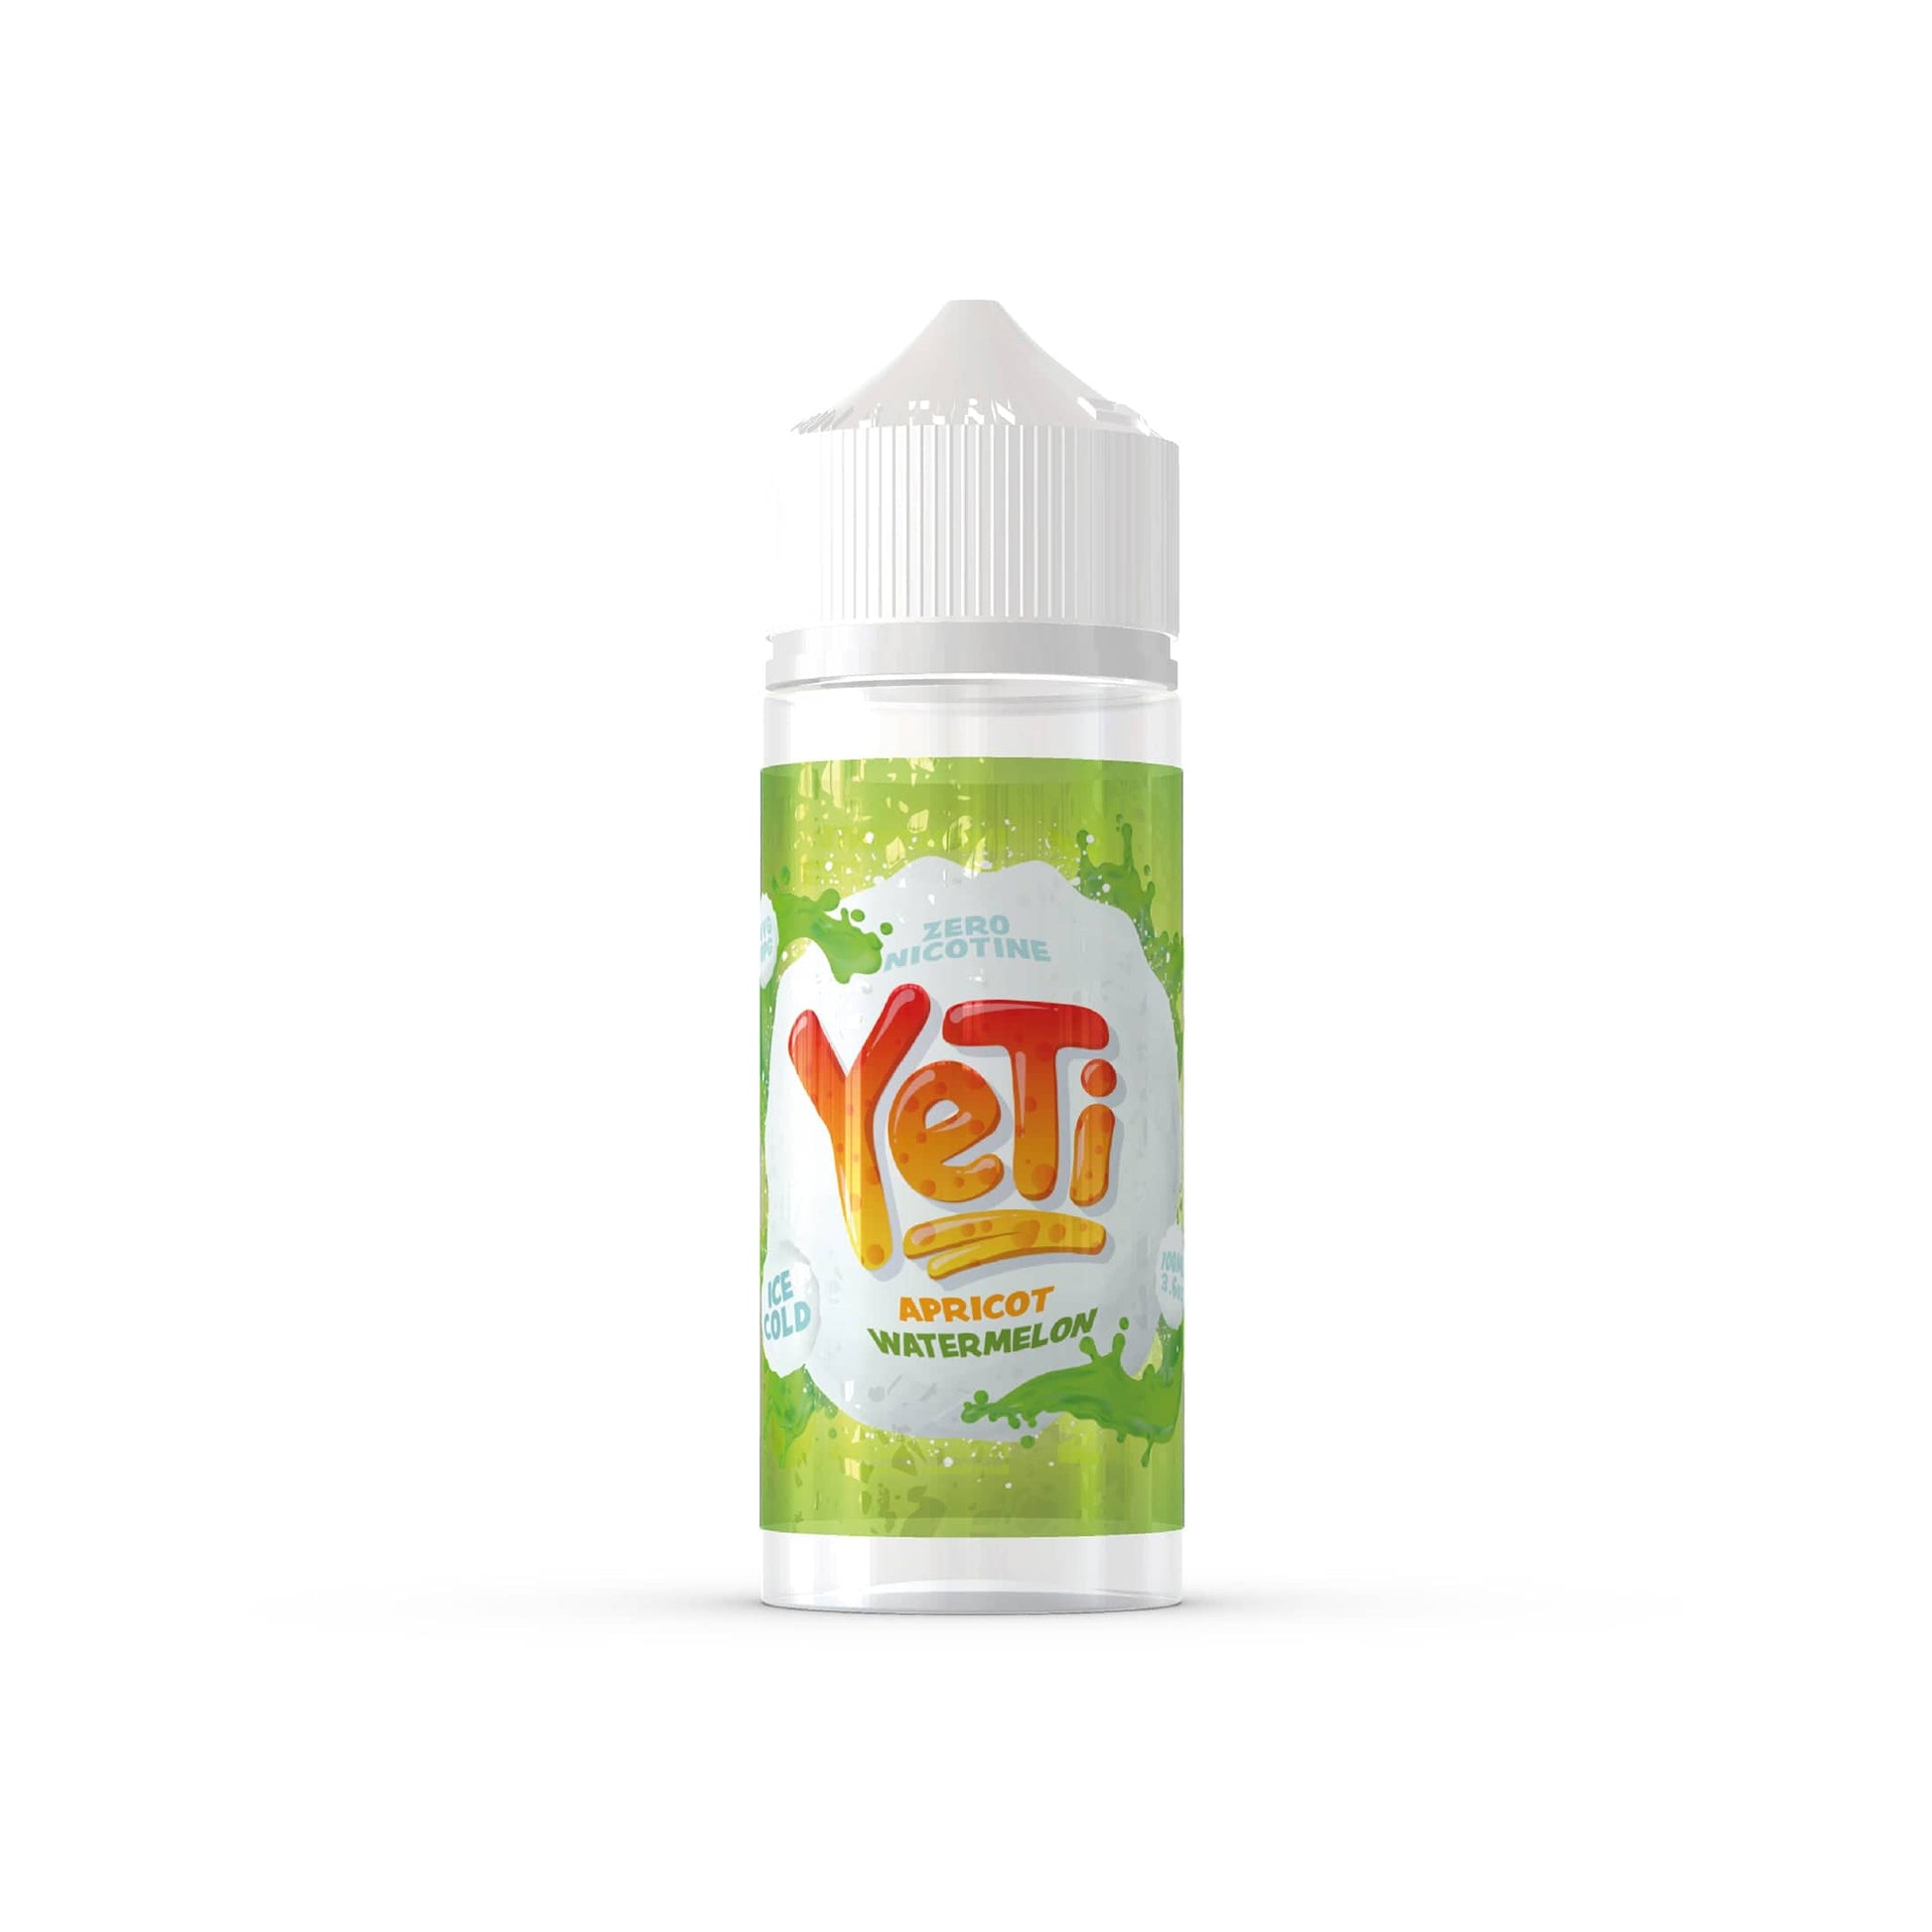 YETI E-Liquid Shortfill Eliquids Apricot Watermelon Yeti Ice Cold 100ml Shortfill E-Liquid